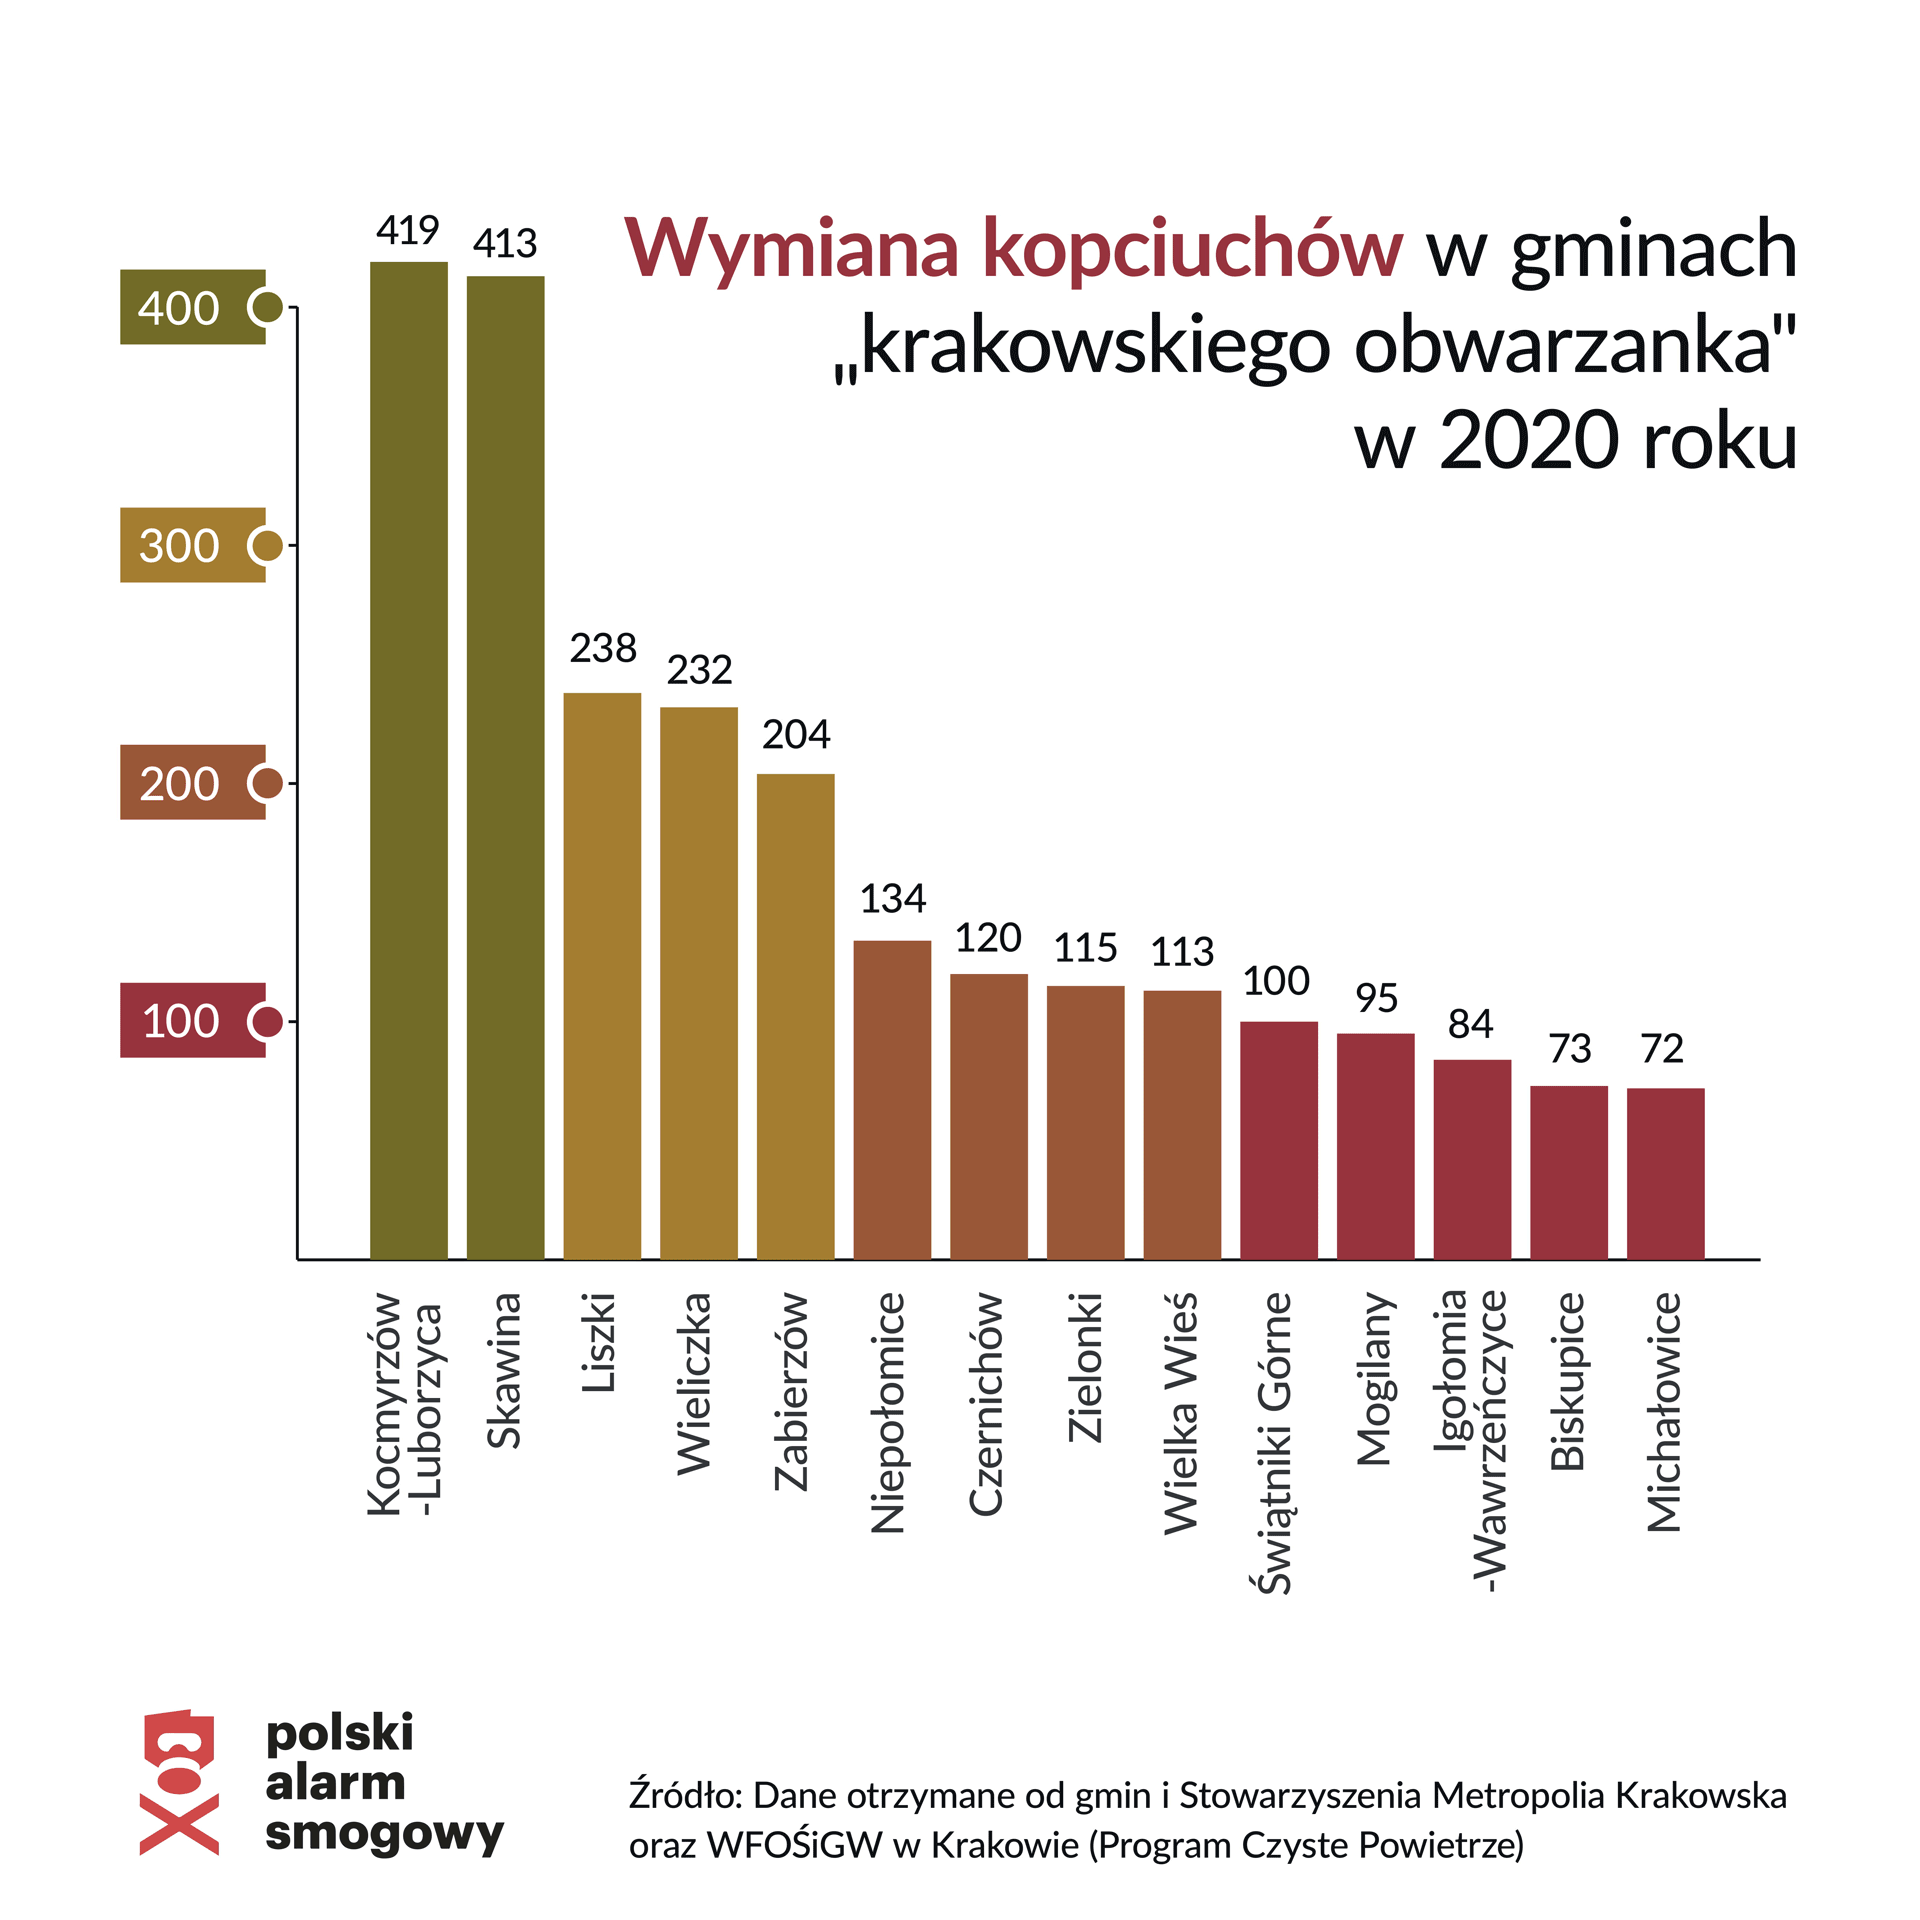 Wymiana kopciuchów w gminach krakowskiego obwarzanka w 2020 roku